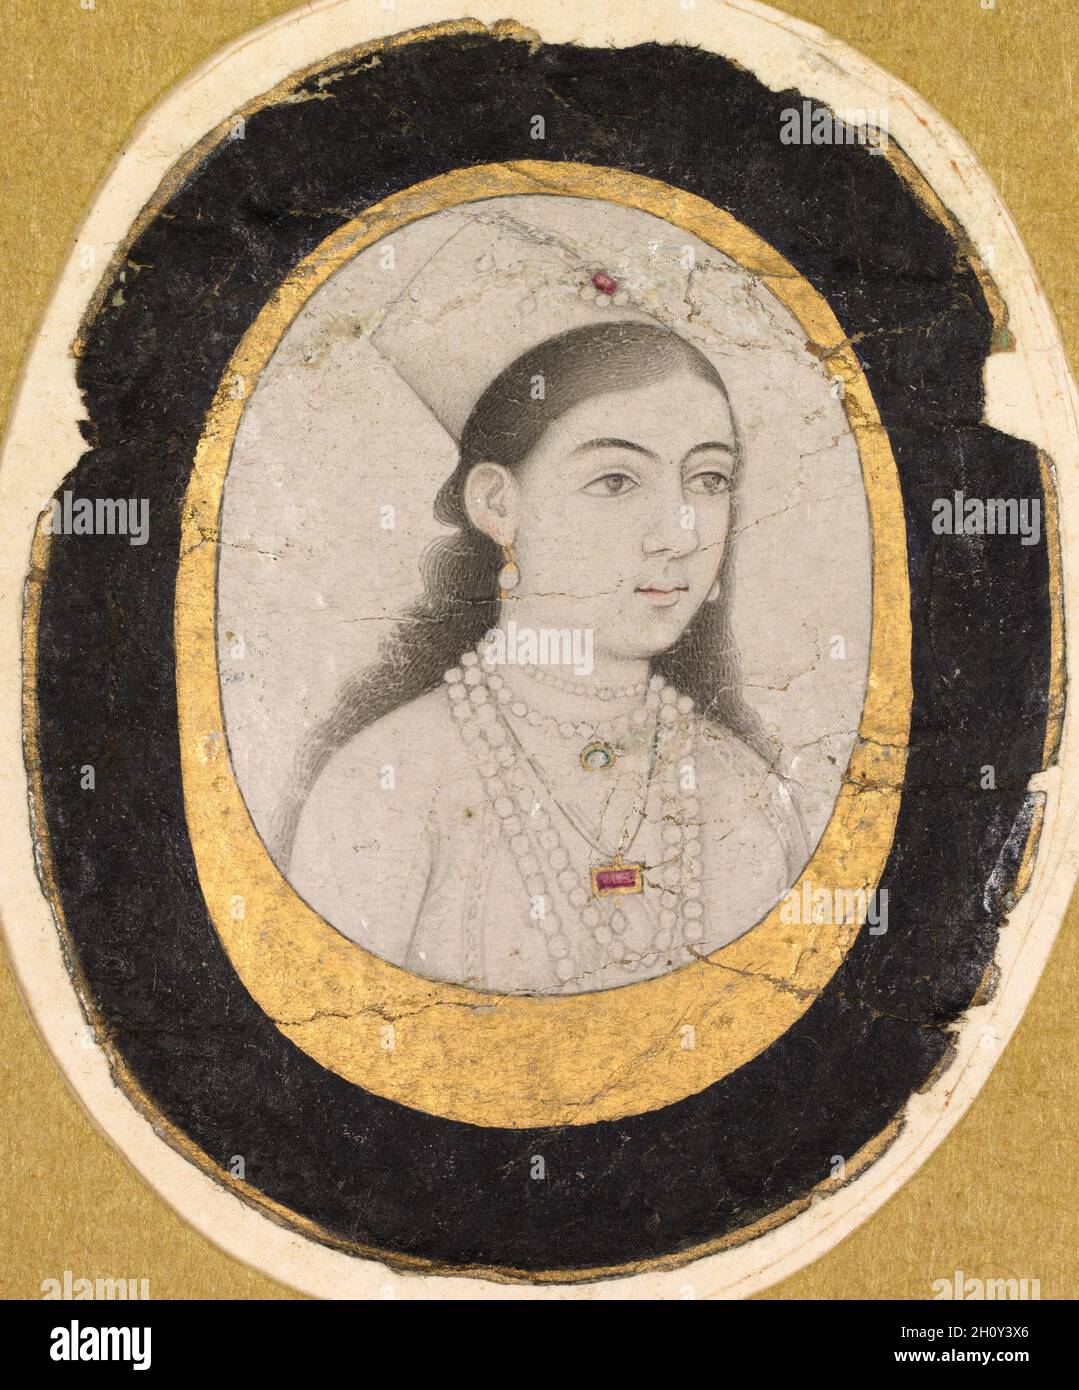 Juwel Porträt eines jungen Mädchen, c.. 1660. Indien, Mughal, 17. Jahrhundert. Tuschezeichnung mit leichten Farbakzenten; Bild: 3.3 x 2.4 cm (1 5/16 x 15/16 Zoll); insgesamt: 4.6 x 3.8 cm (1 13/16 x 1 1/2 Zoll). Diese kleine Zeichnung eines jungen Mädchens, das eine Chaghtai-Mütze trägt, kann ein Abbild eines Mitglieds einer königlichen oder höfischen Mughal-Familie sein. Die Genauigkeit der weiblichen Porträtaufnahmen ist ein ungelöstes Problem in der Mogulkunst, da es viele Bilder von Frauen gibt, die eher Studien der weiblichen Schönheit als visuelle Aufzeichnungen von echten Menschen zu sein scheinen. Da das Mädchen in diesem Bild jedoch kein idealisierter Typ ist, ist es mehr Stockfoto